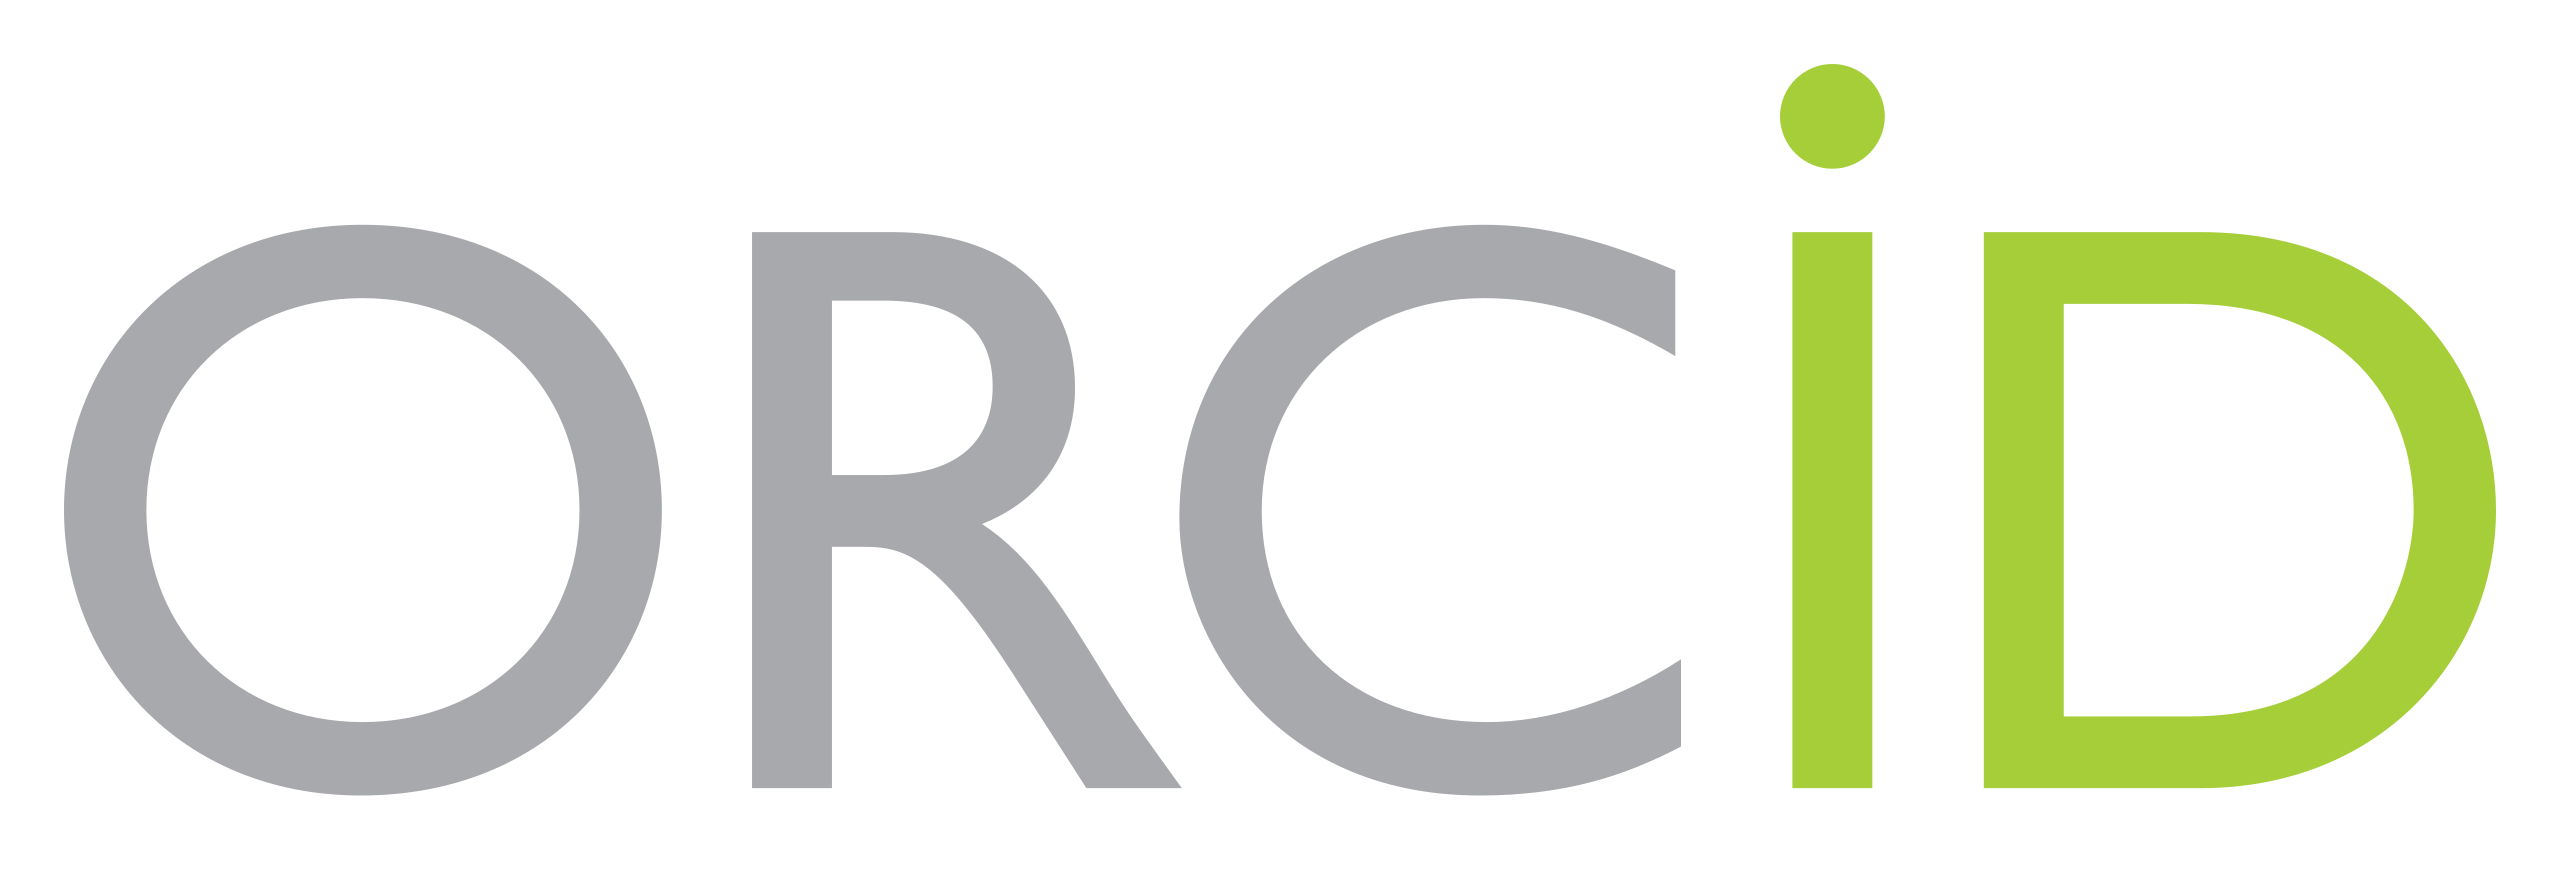 ORCID_logo.png